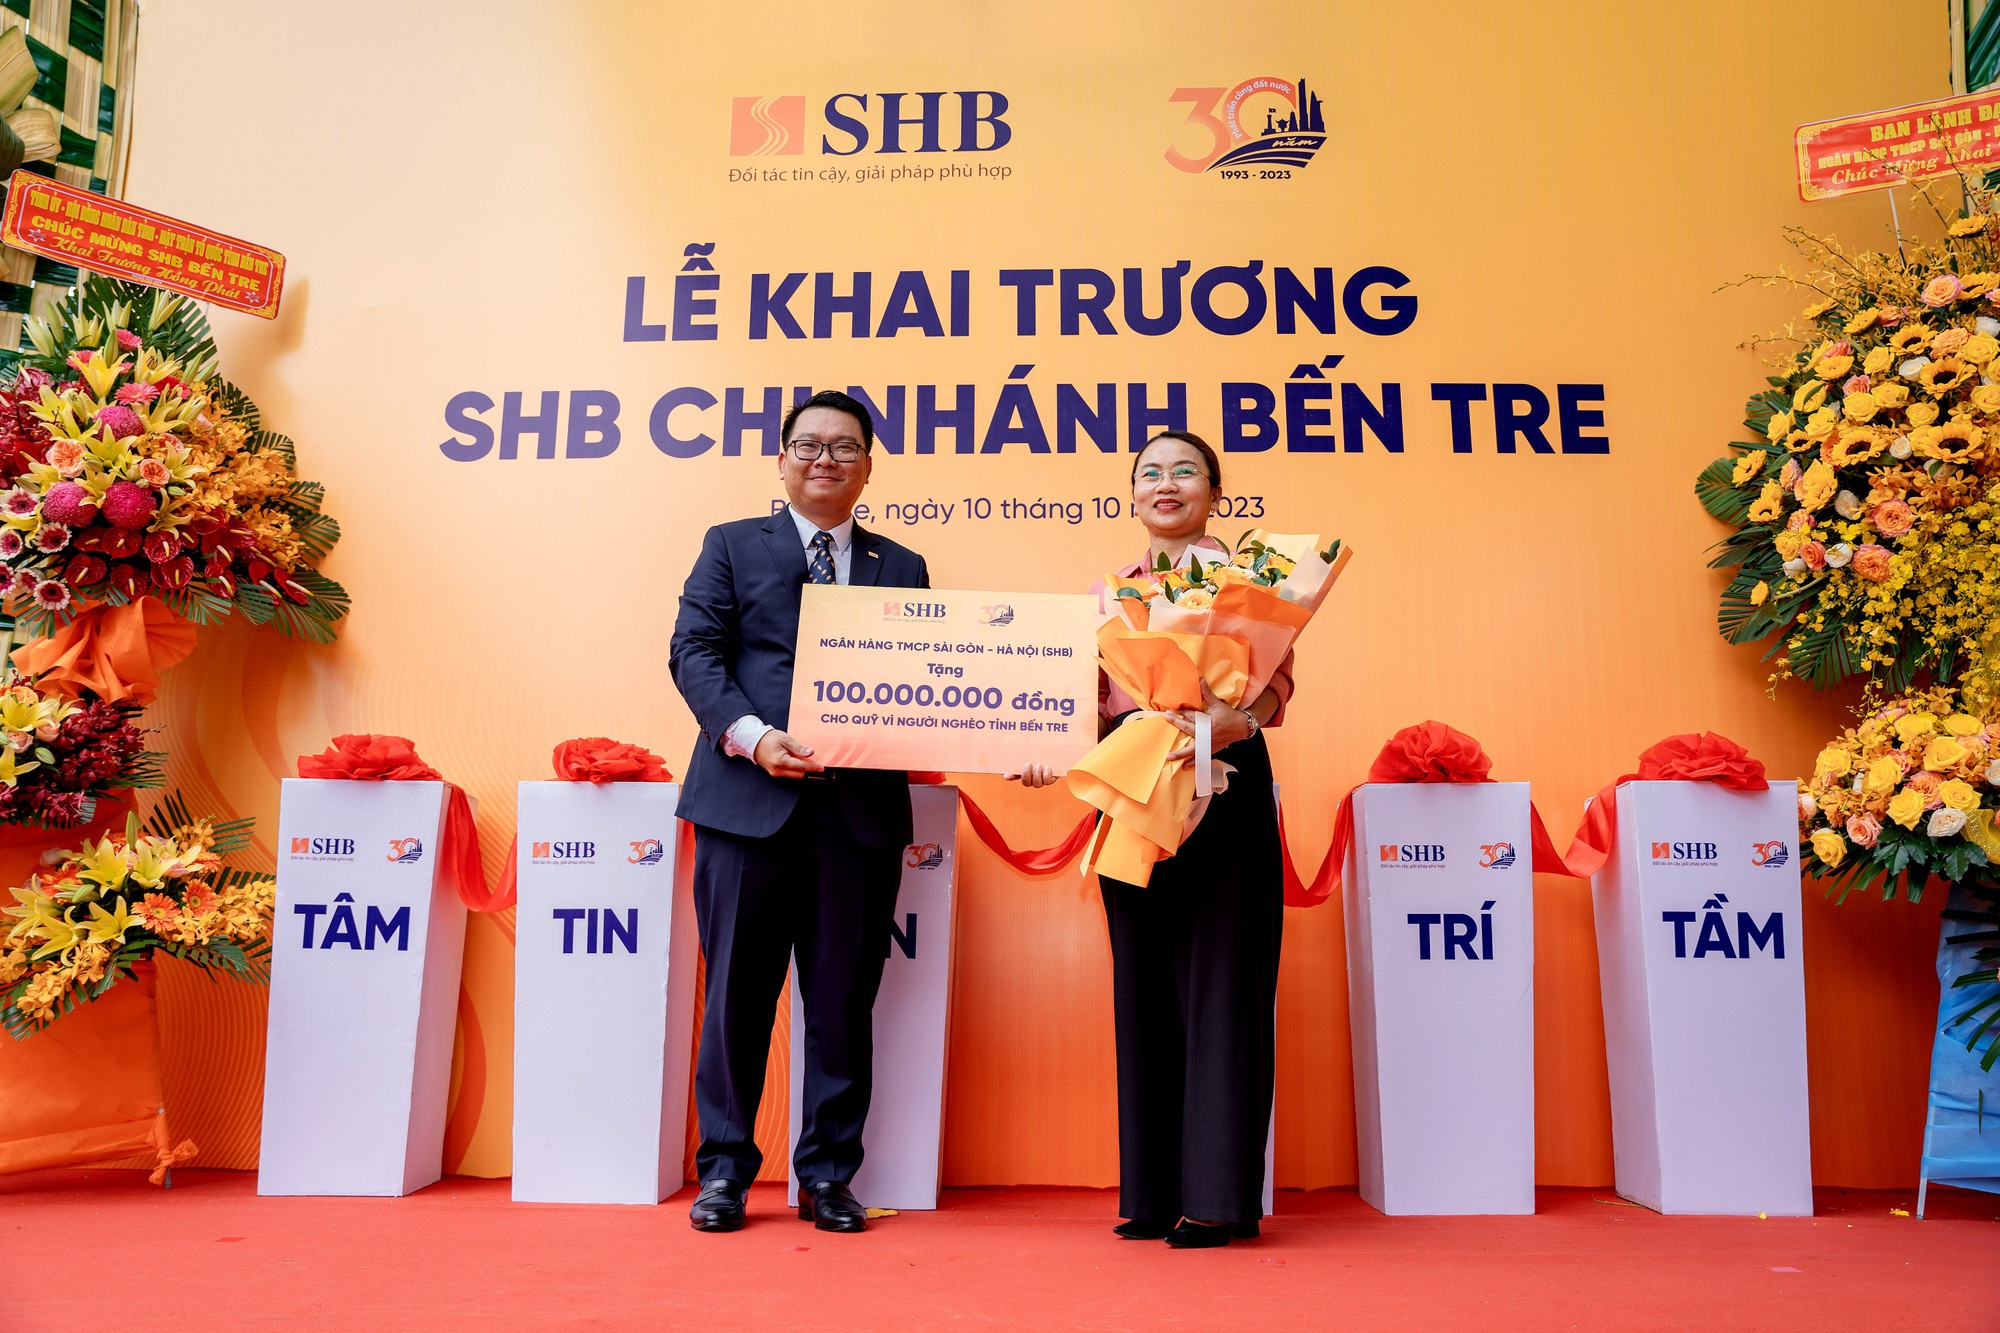 Ông Huỳnh Thanh Huấn - Giám đốc SHB Bến Tre đại diện ngân hàng trao tặng Quỹ Vì người nghèo tỉnh Bến Tre 100 triệu đồng.